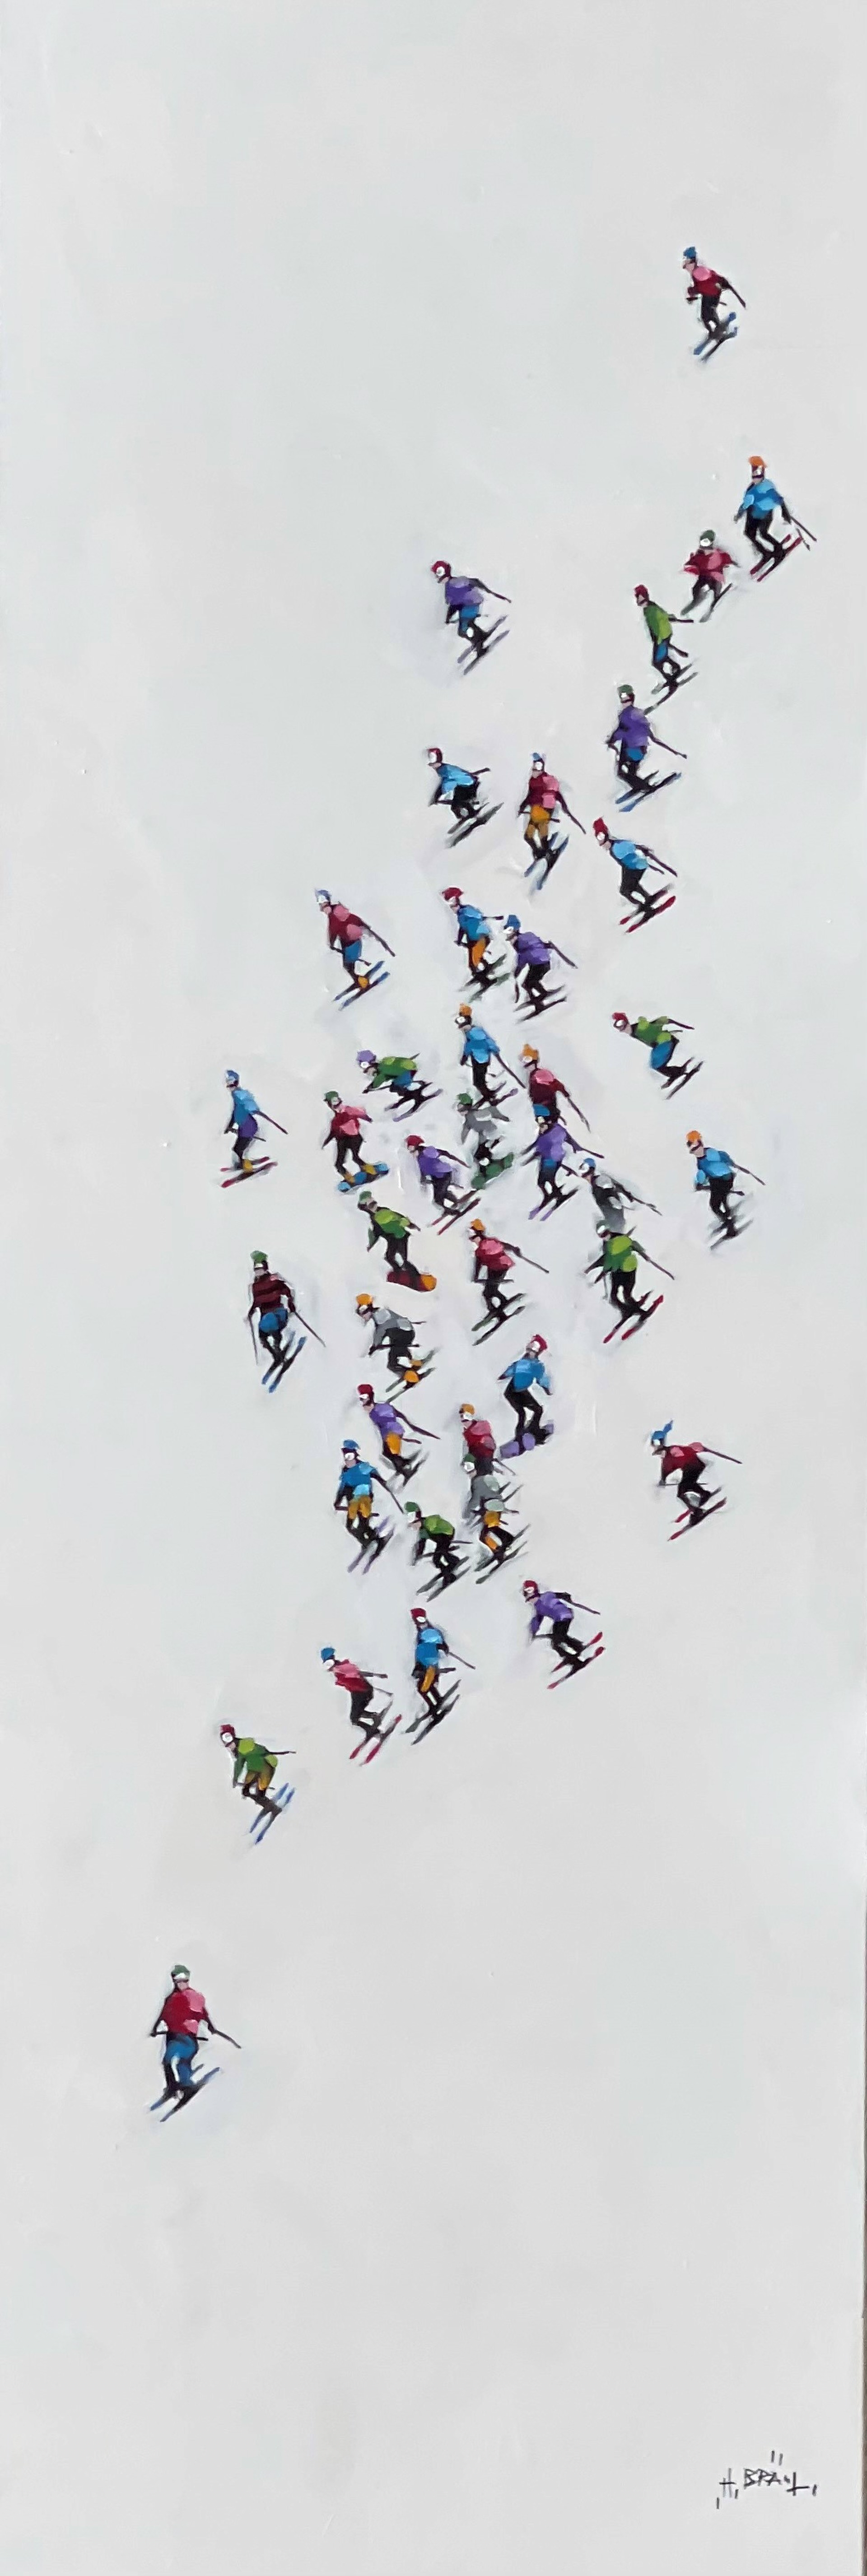 Skiers 189778 by Harold Braul